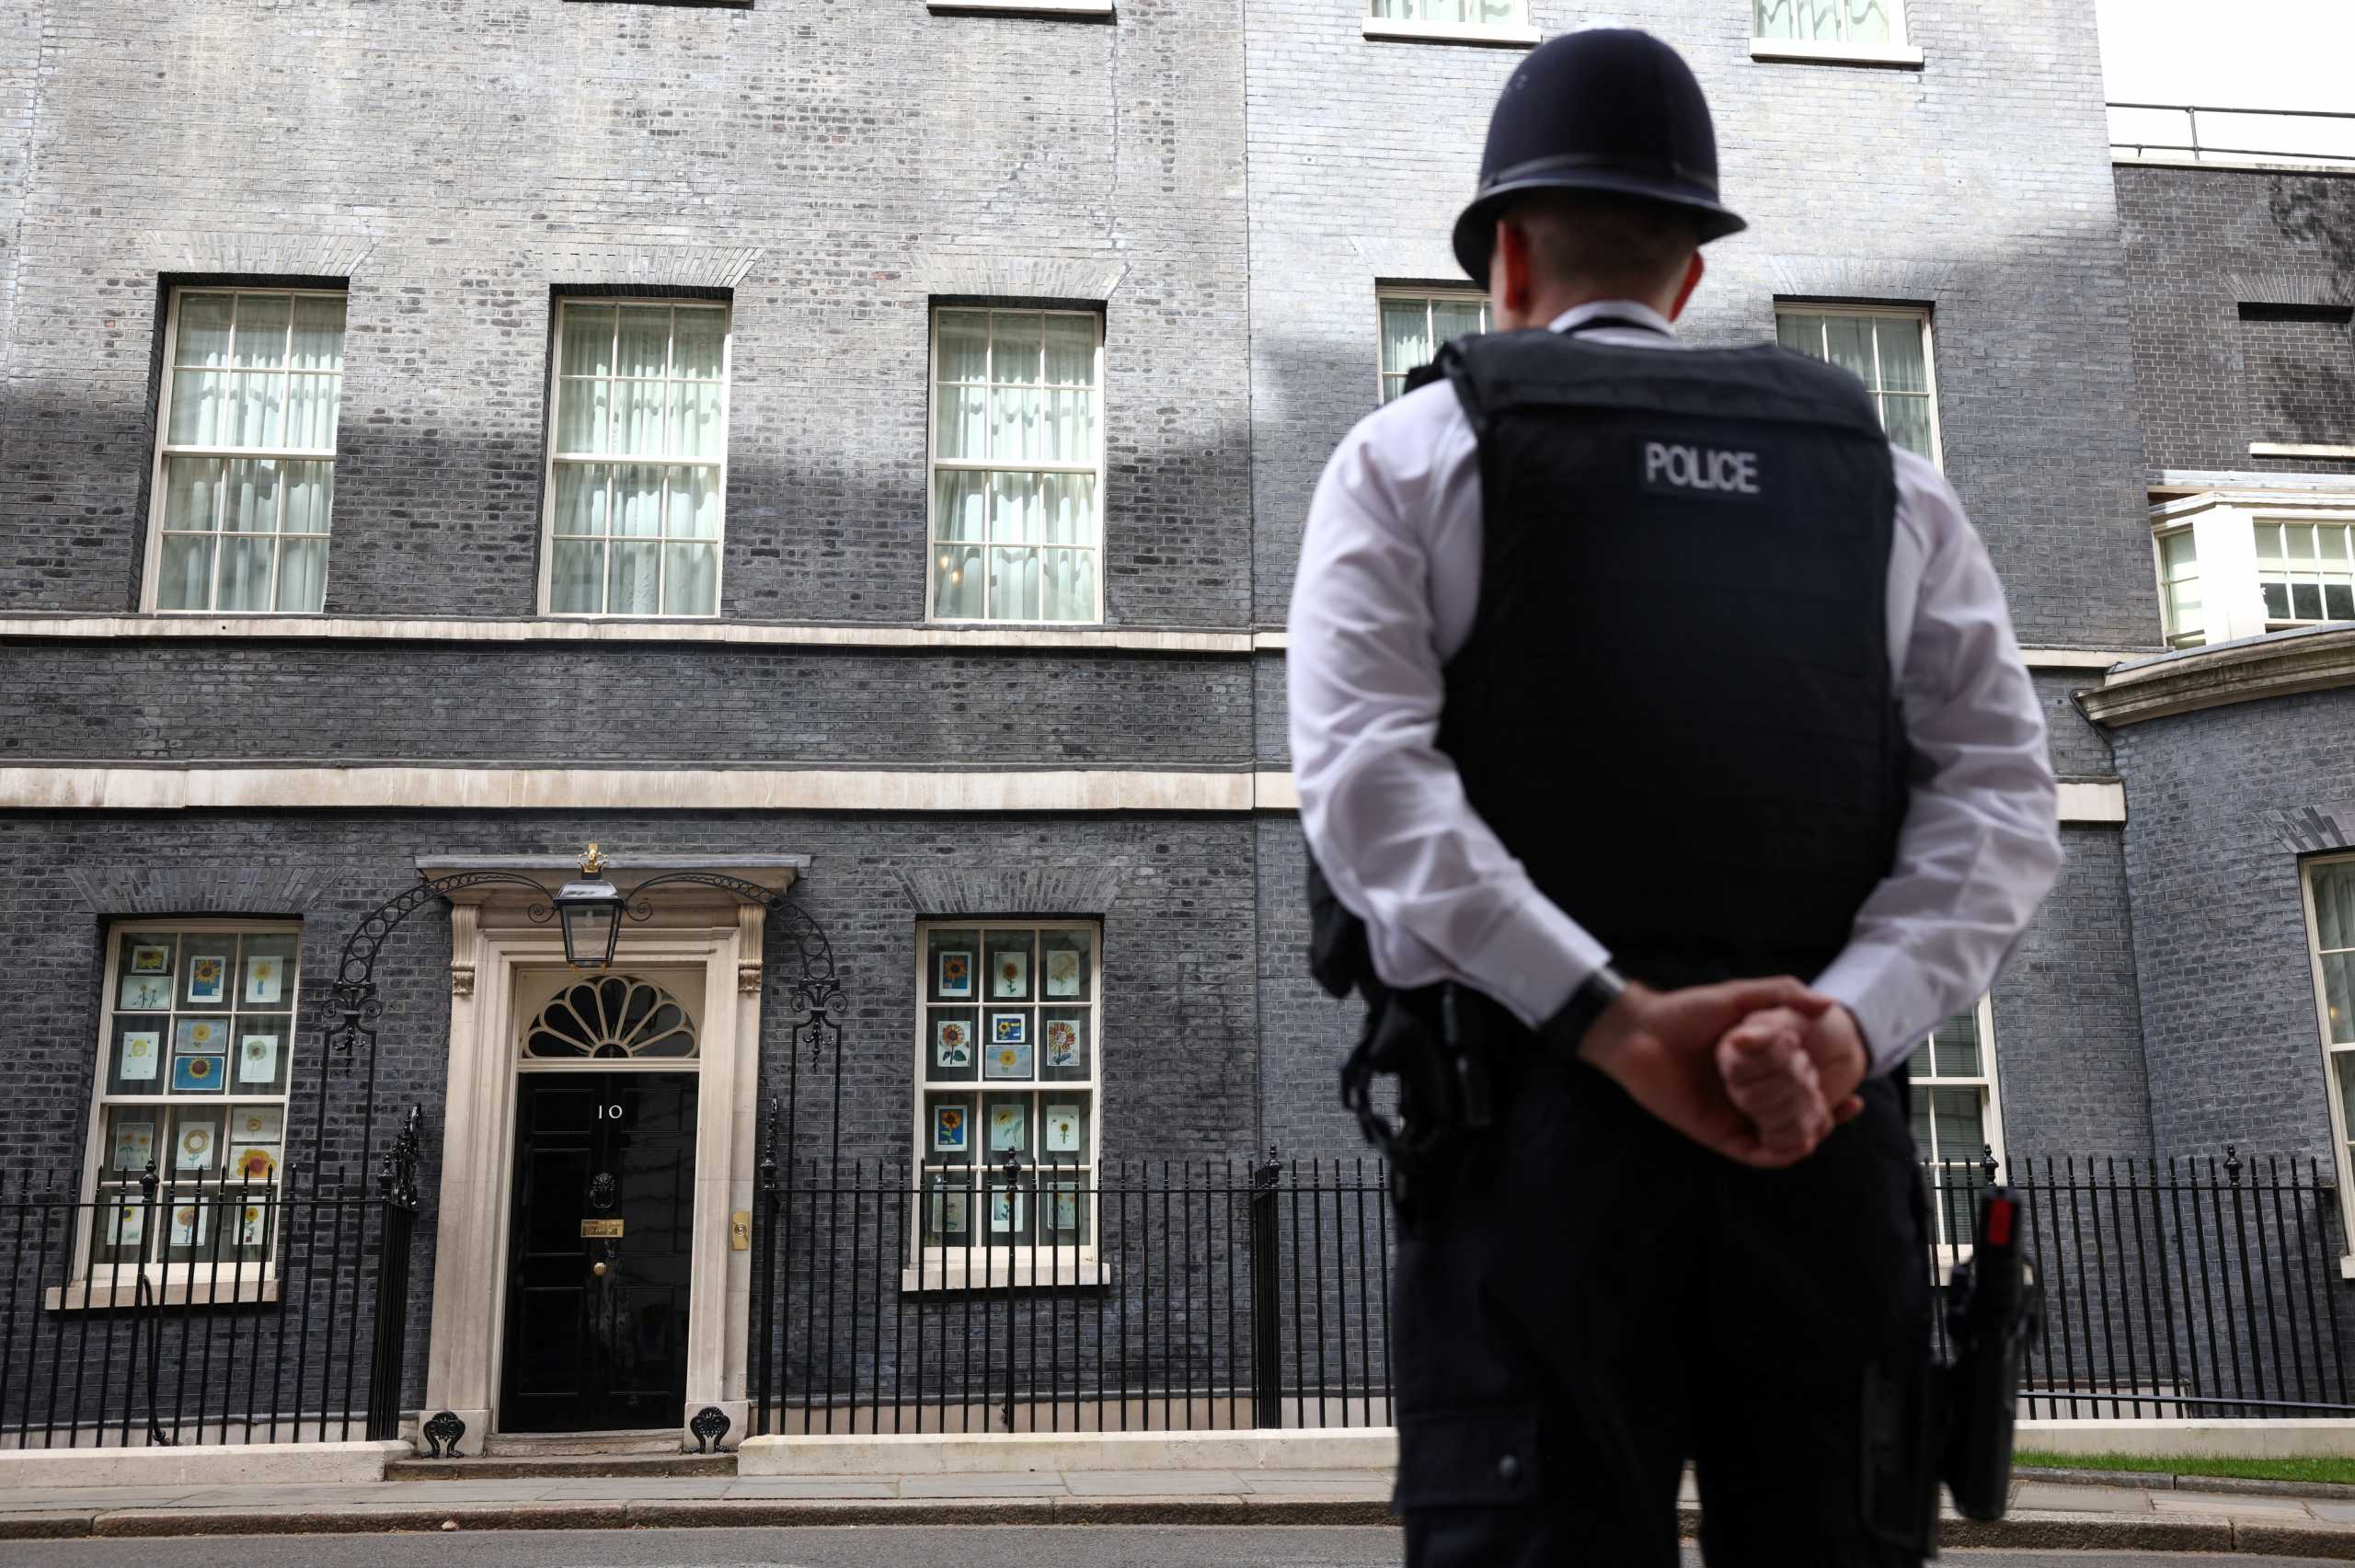 Αστυνομικός στην Βρετανία συνελήφθη πριν συναντήσει 13χρονη για σεξ – Είχε πάνω του προφυλακτικά και χάπια στύσης